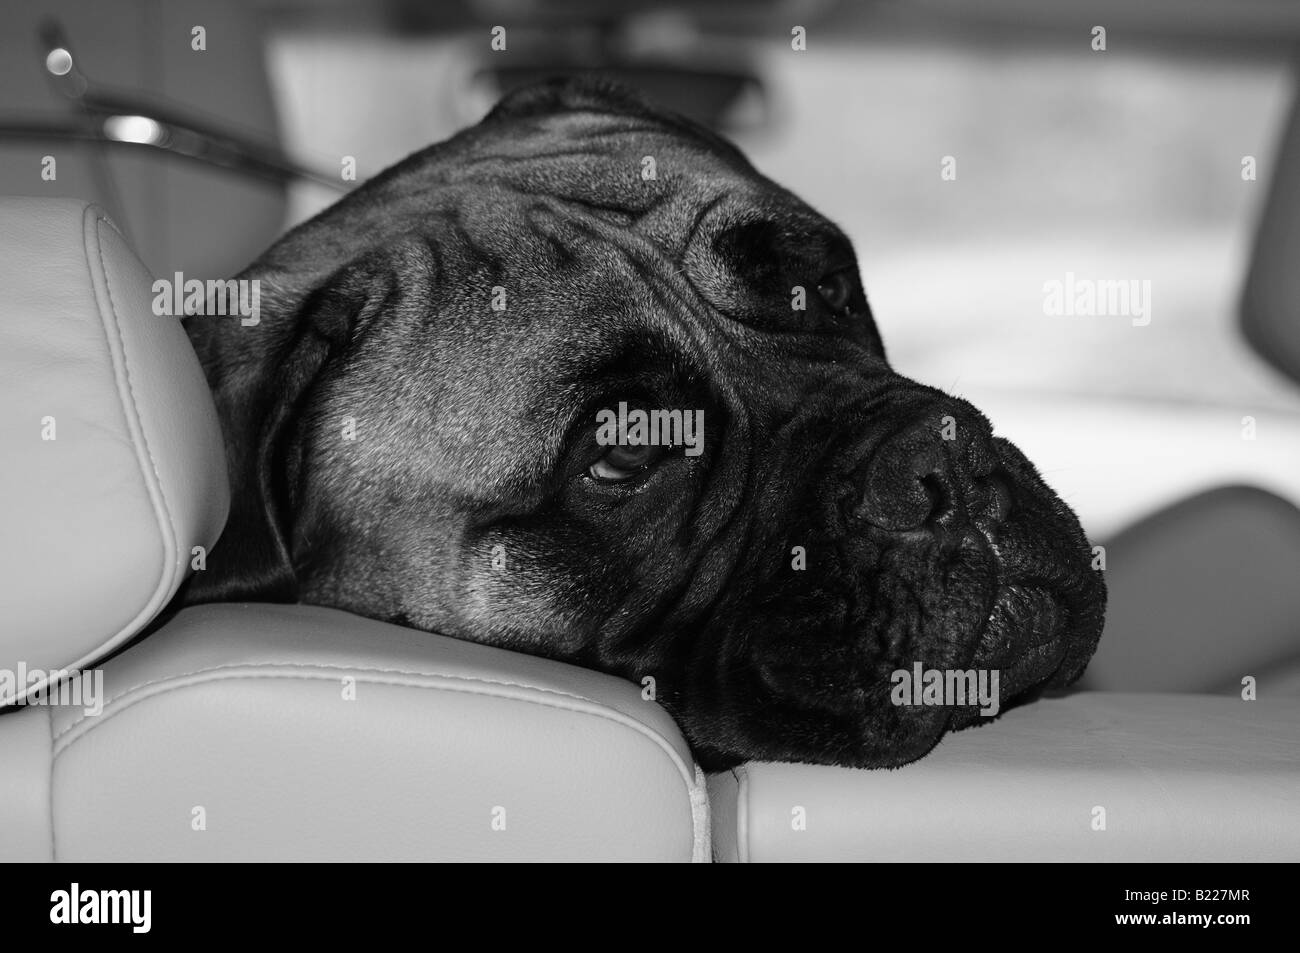 Un bullmastiff (Bull Mastiff) perro mirando su cabeza sobre el respaldo de los asientos de cuero de un coche, como su propietario decide marcharse. Foto de stock